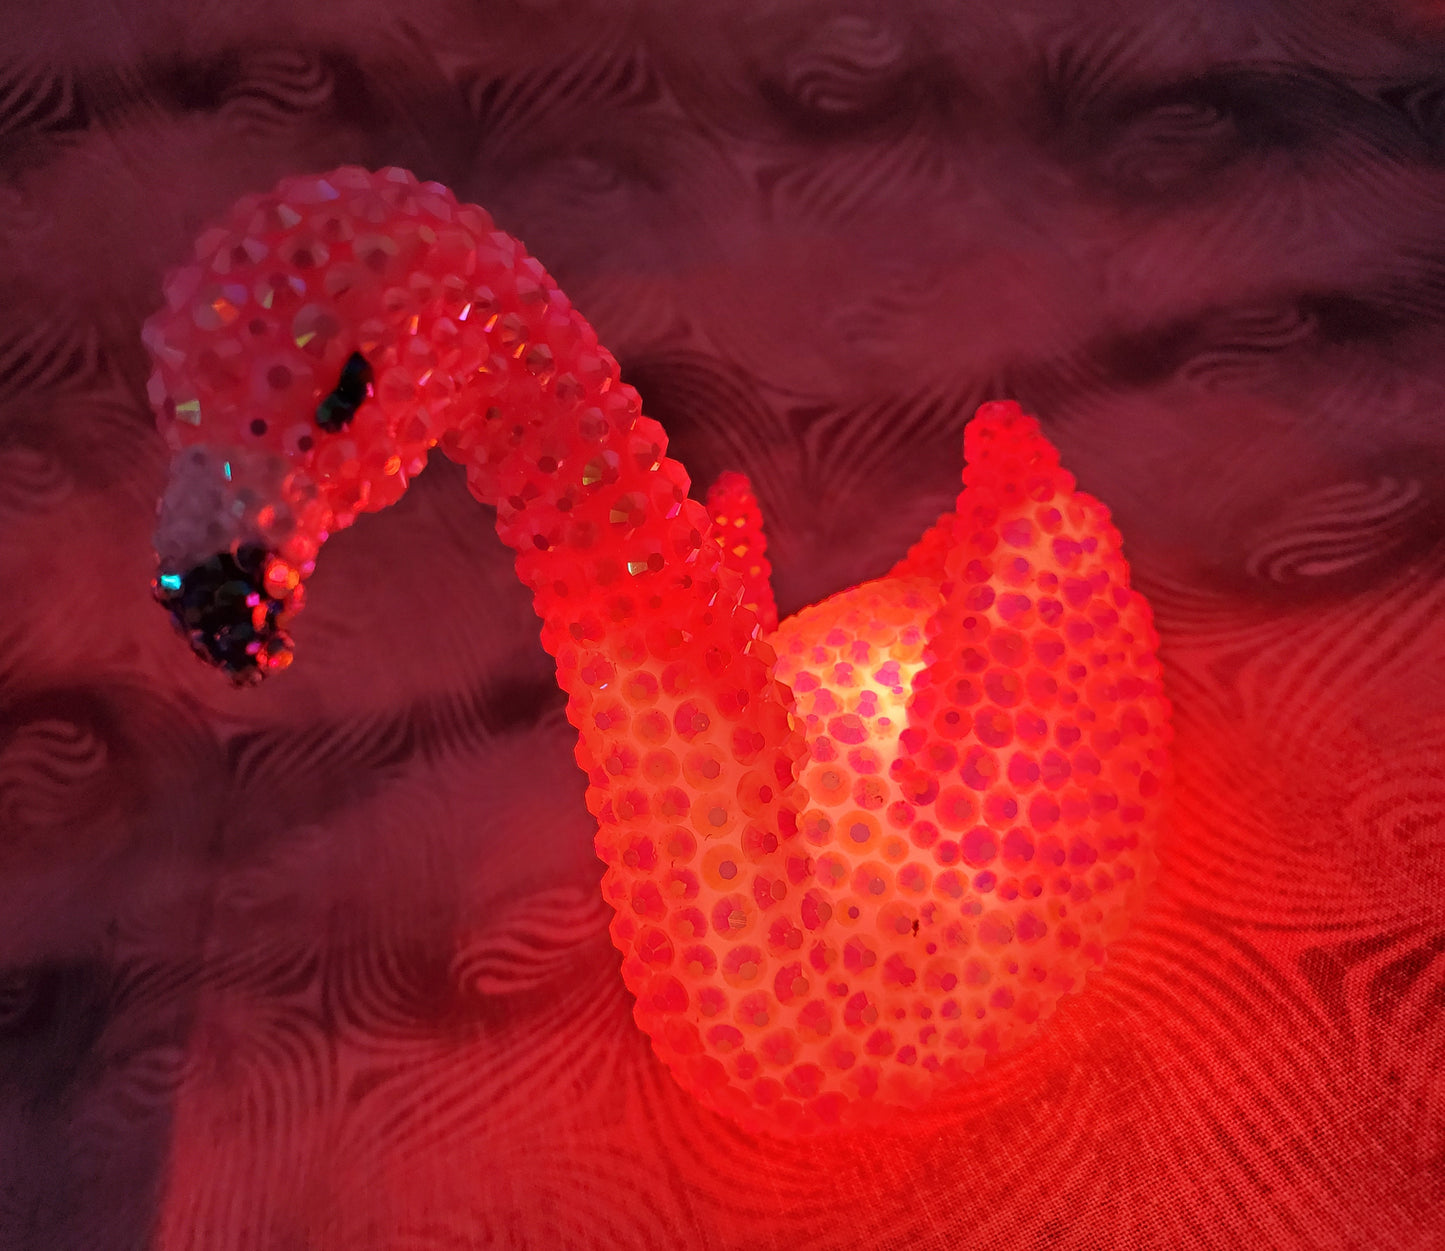 Rhinestone-Encrusted Light-Up Flamingo